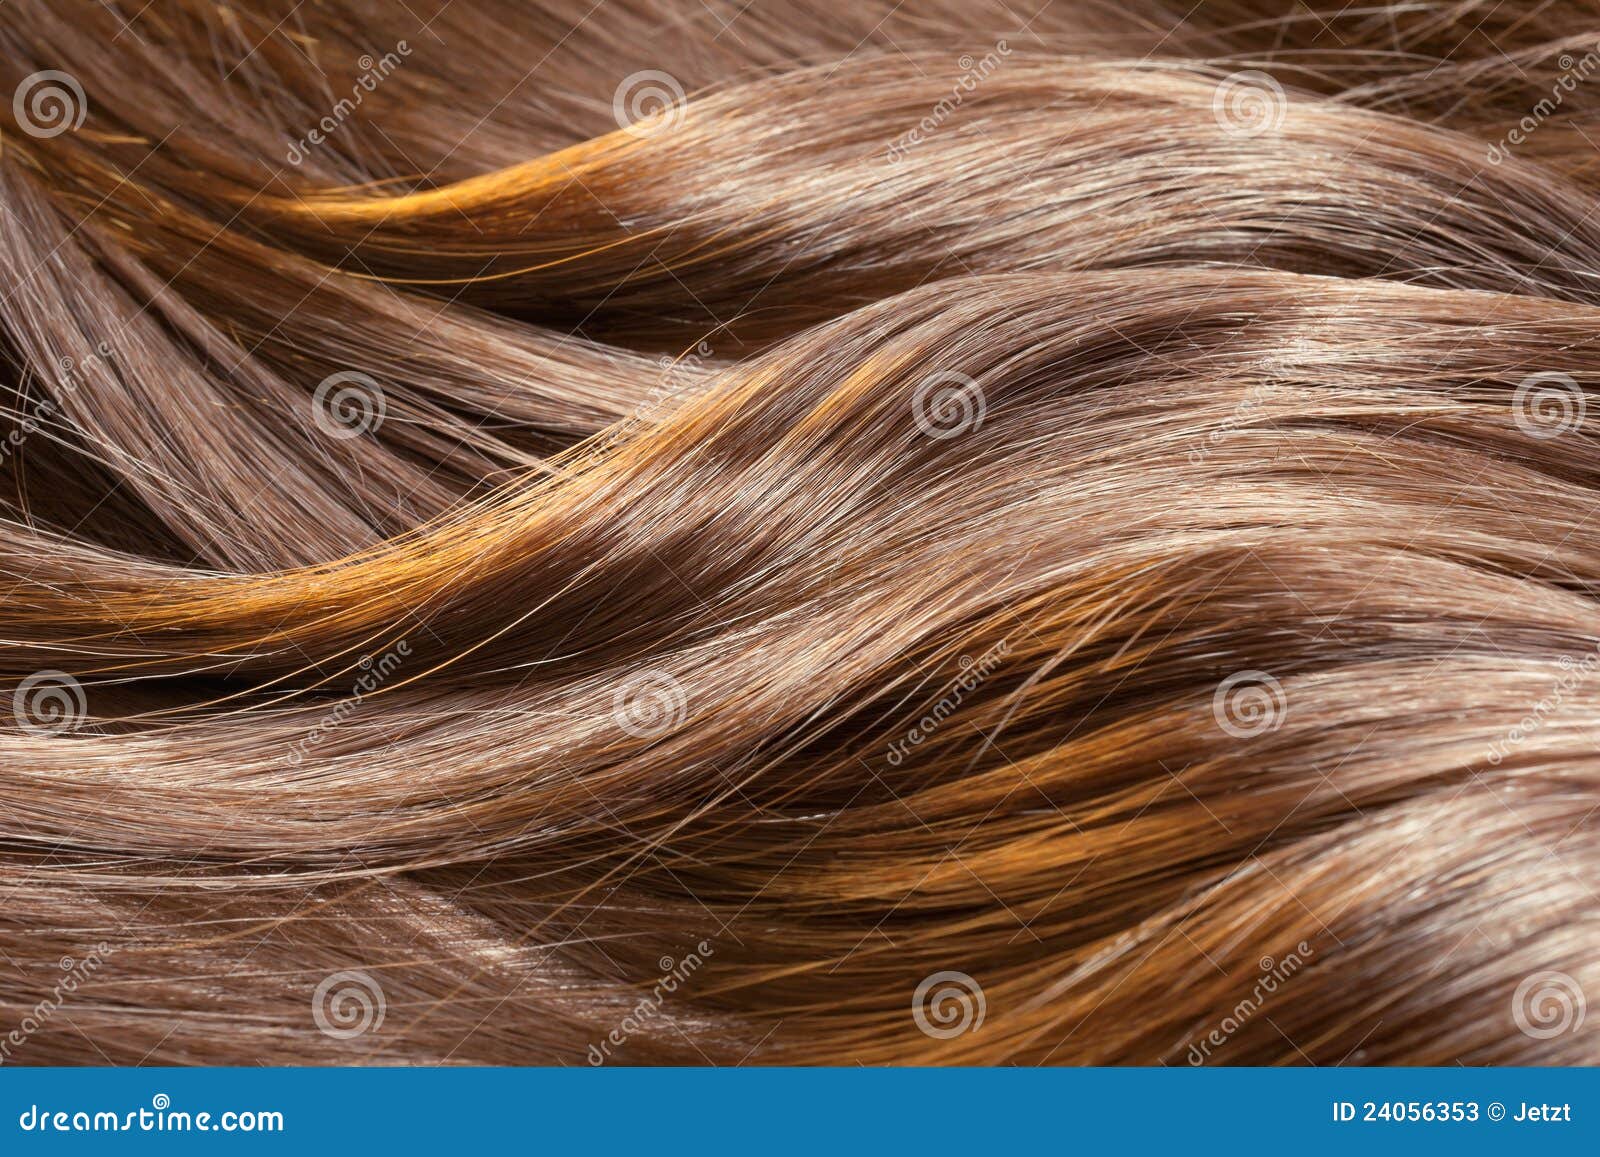 beautiful shiny hair texture